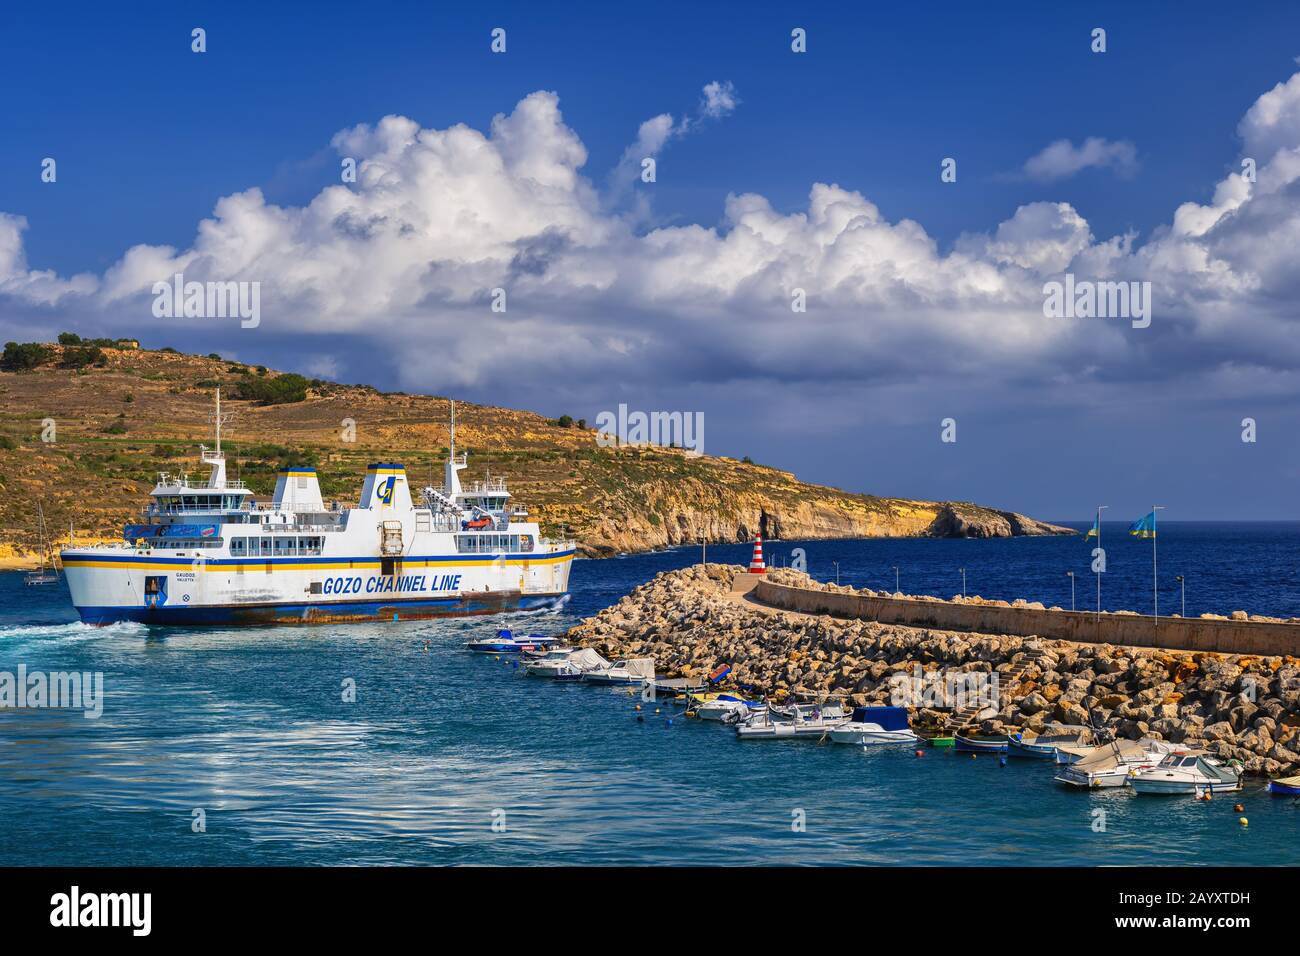 Gozo, Malta - 15 ottobre 2019: Traghetto della linea della Manica di Gozo che parte dal porto dell'isola di Gozo in direzione dell'isola di Malta, il modo principale di trasporto è la scommessa Foto Stock